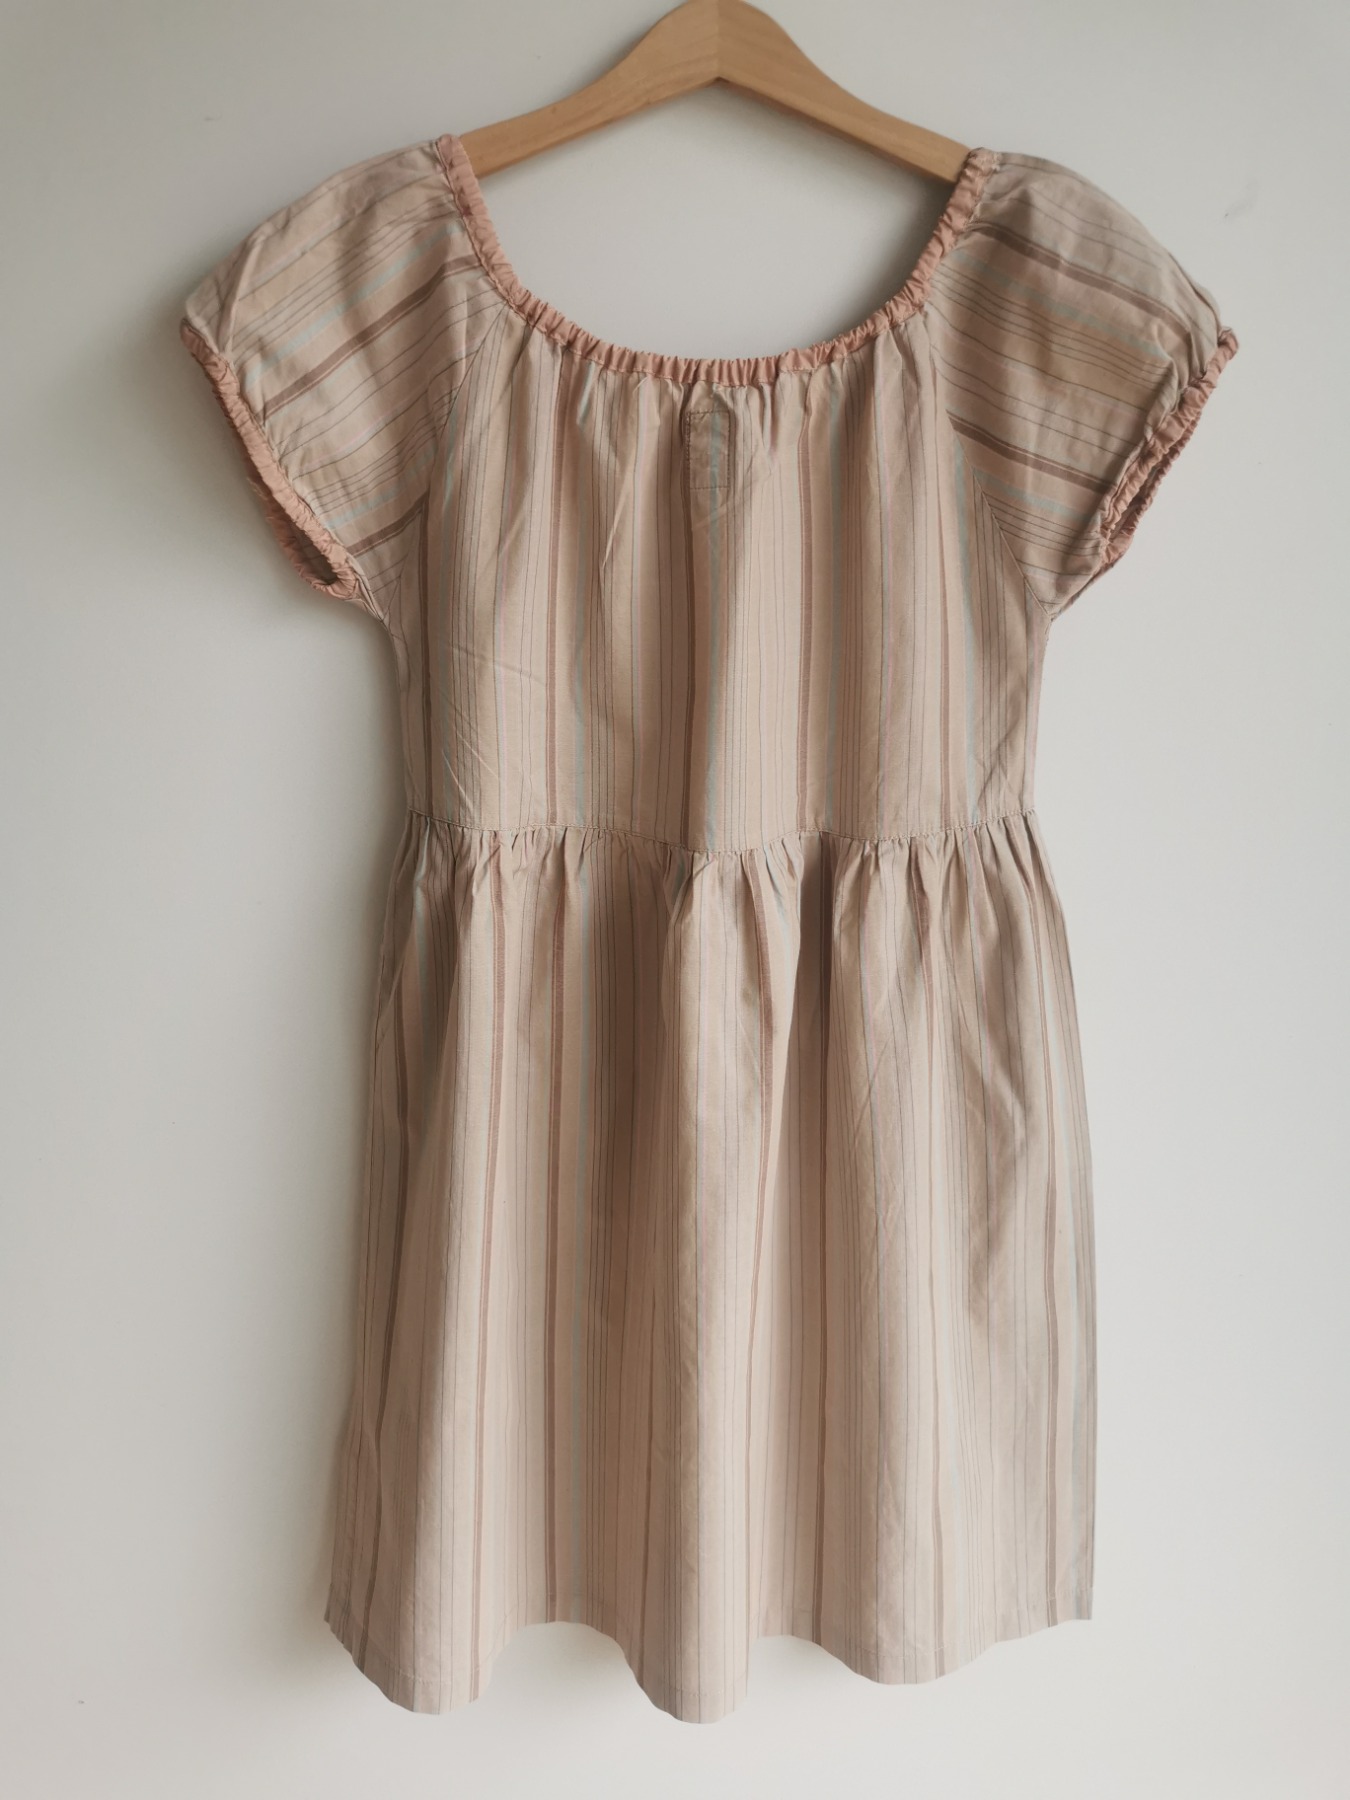 Rosiges Kleid - Größe 128/134 4